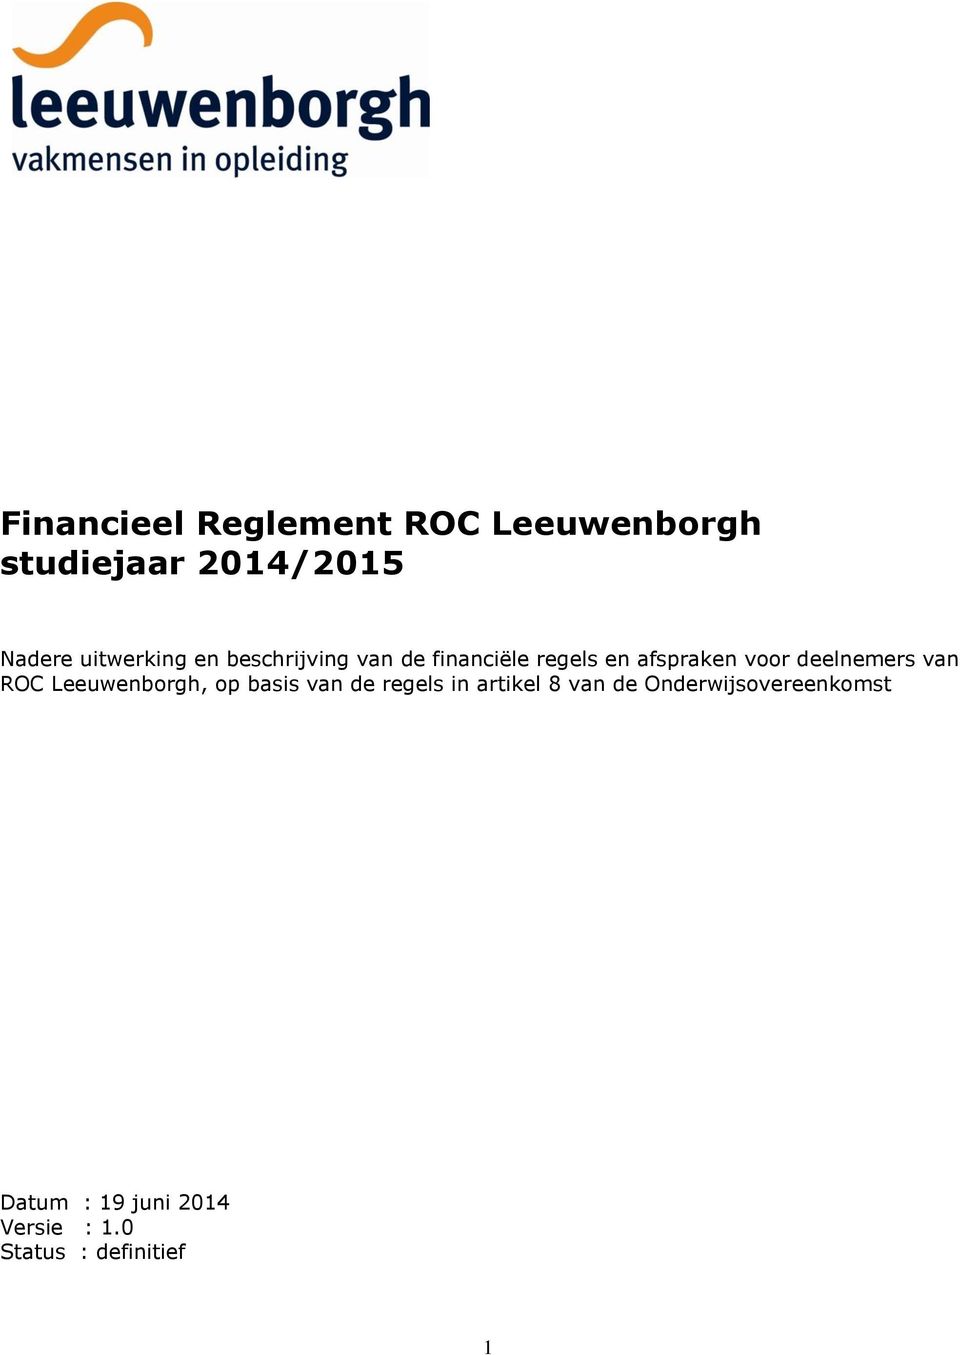 deelnemers van ROC Leeuwenborgh, op basis van de regels in artikel 8 van